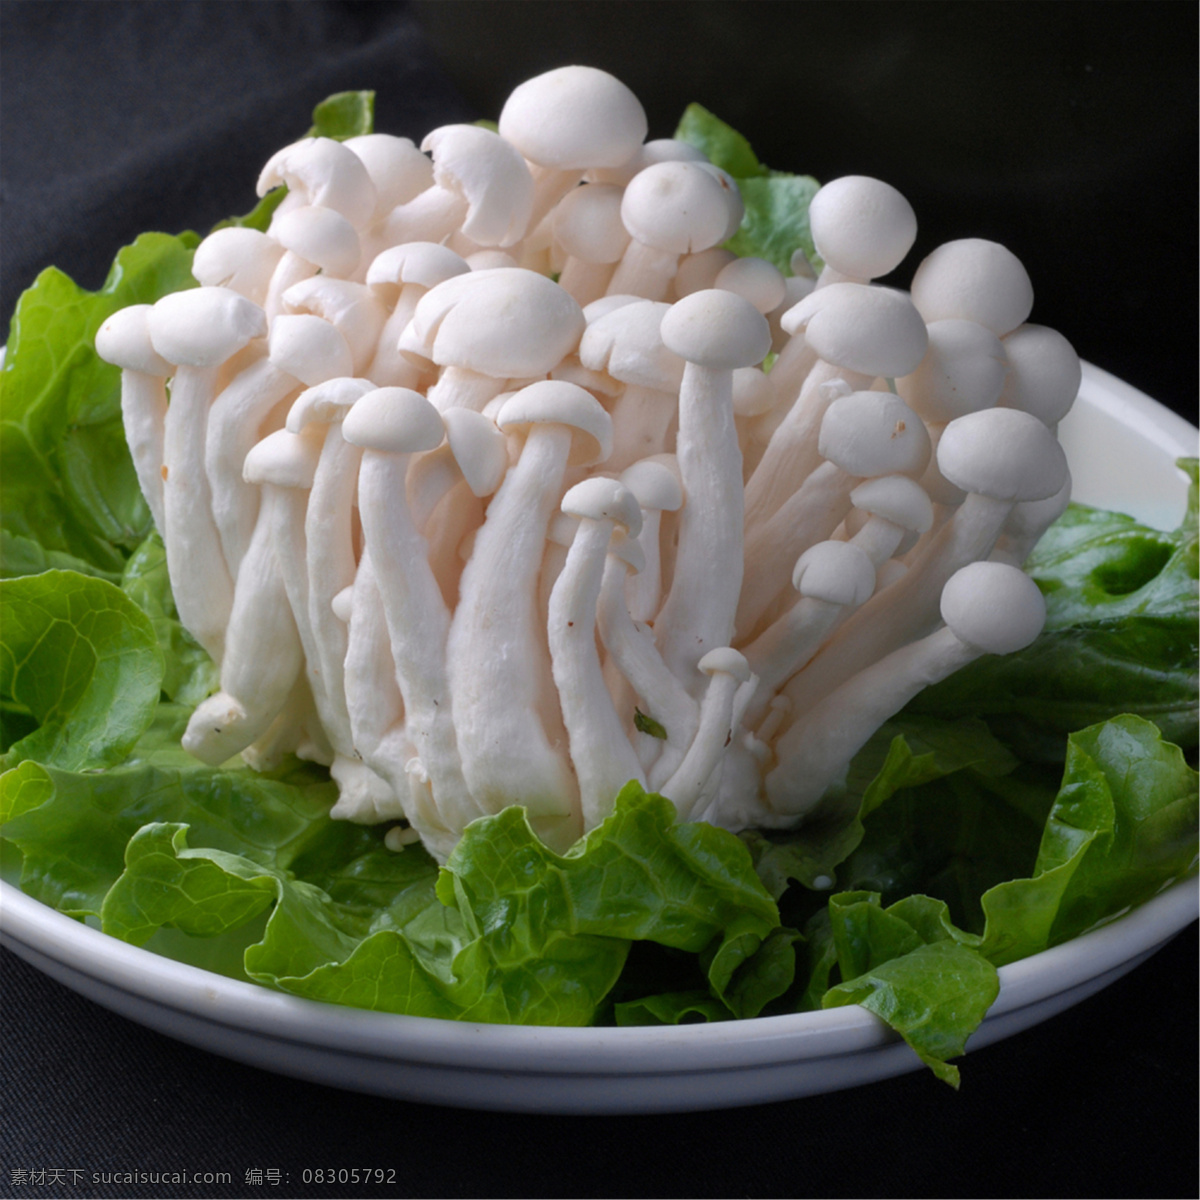 菌白玉菇 美食 传统美食 餐饮美食 高清菜谱用图